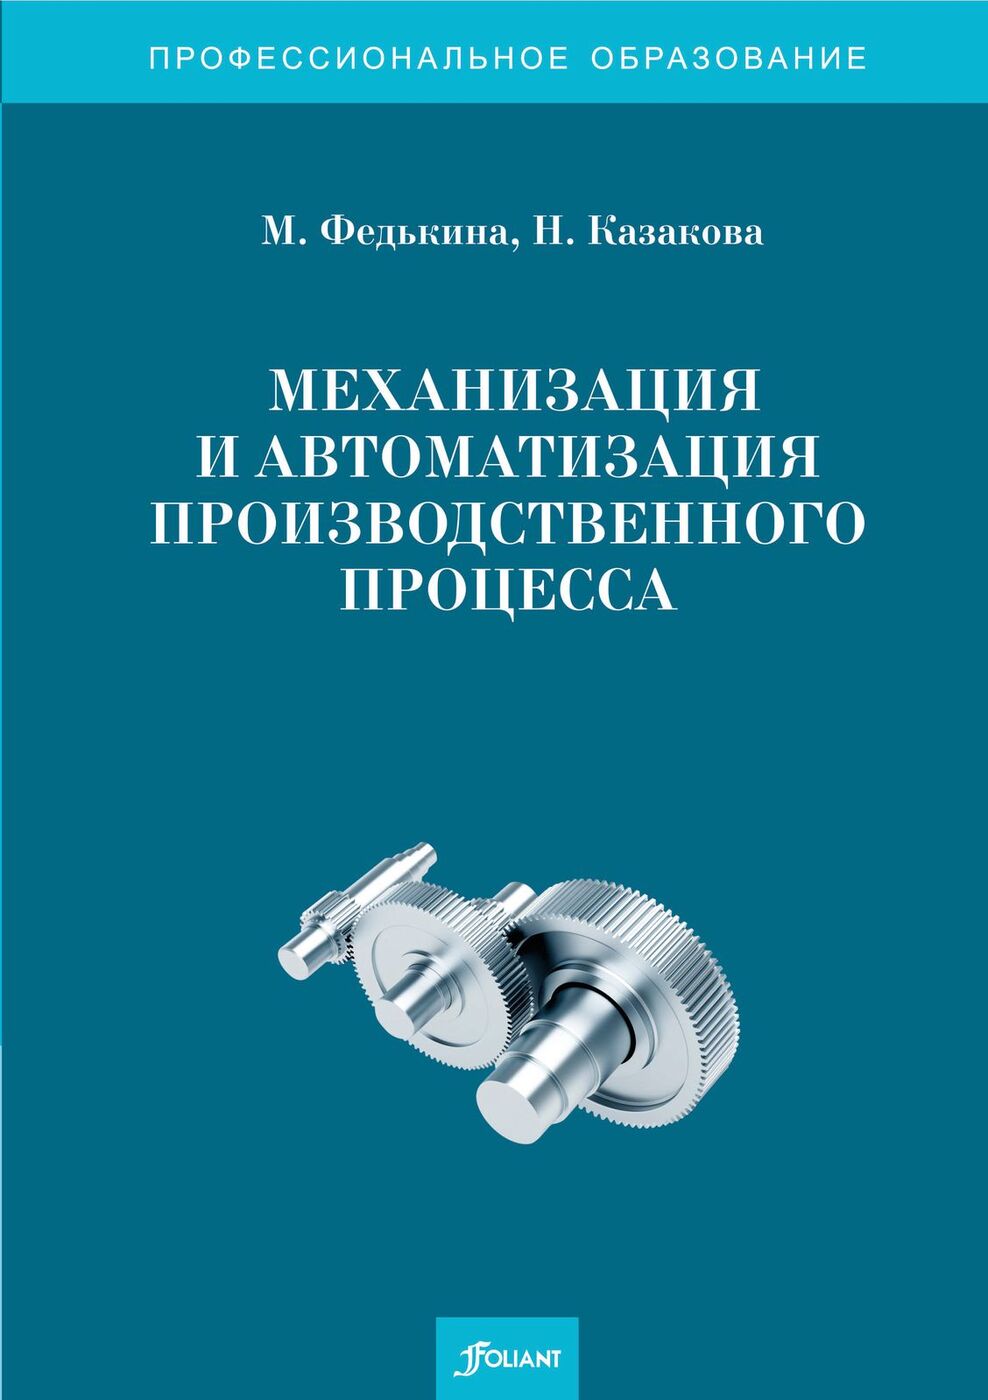 Механизация и автоматизация производственного процесса. 2-е изд., перераб.и доп.